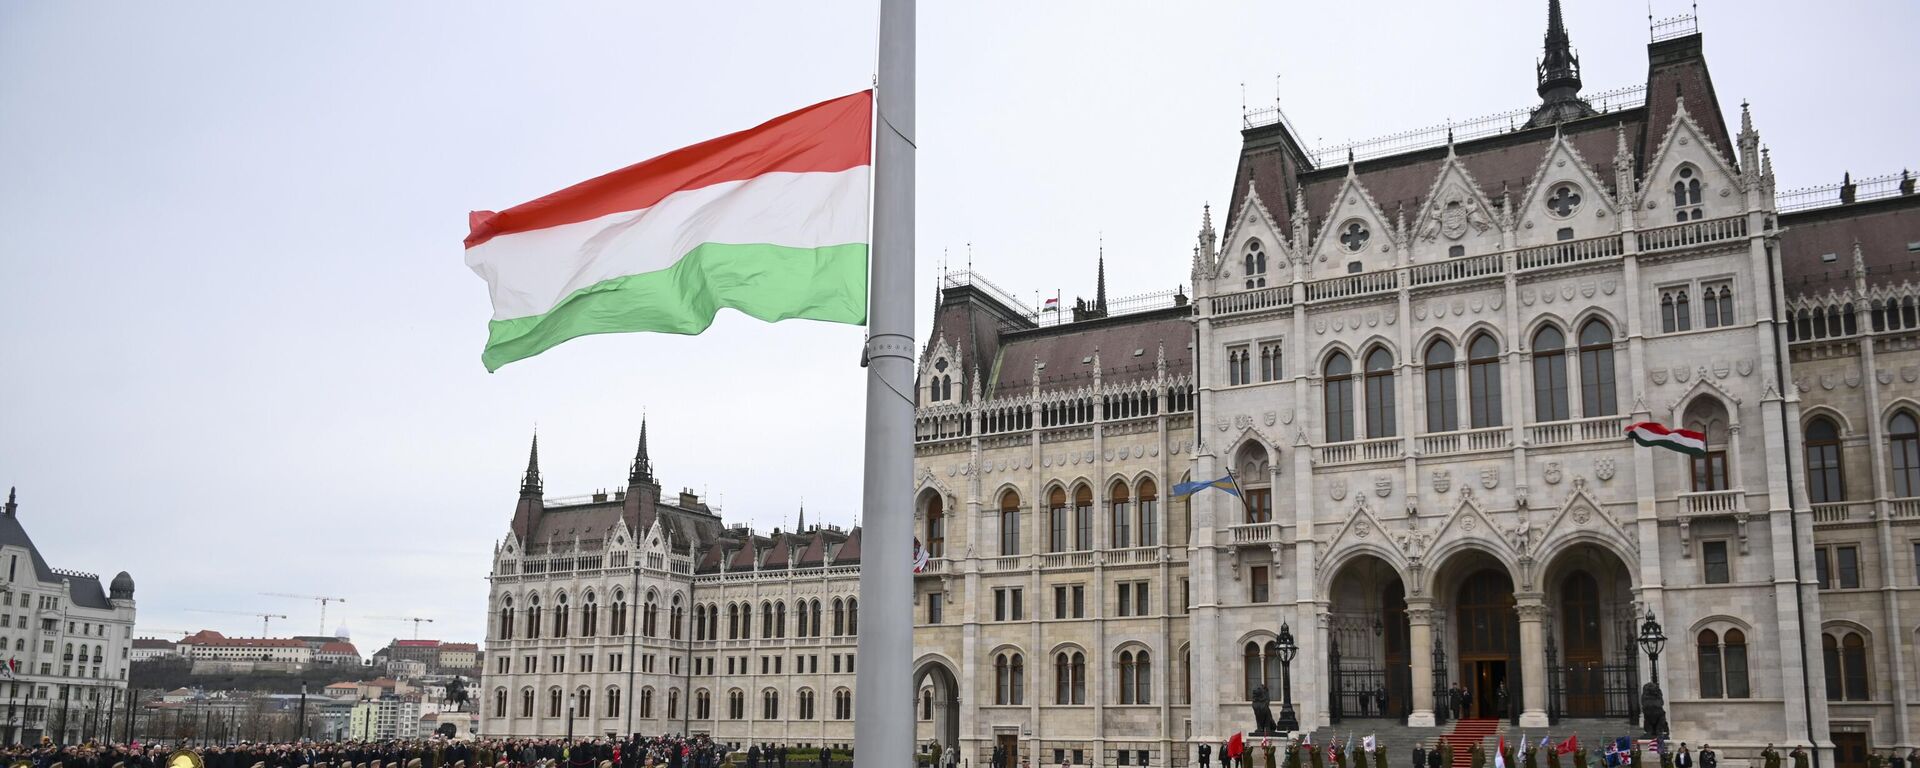 Guardas de honra húngaros içam a bandeira nacional em frente ao edifício do Parlamento, em Budapeste. Hungria, 15 de março de 2023 - Sputnik Brasil, 1920, 03.10.2023